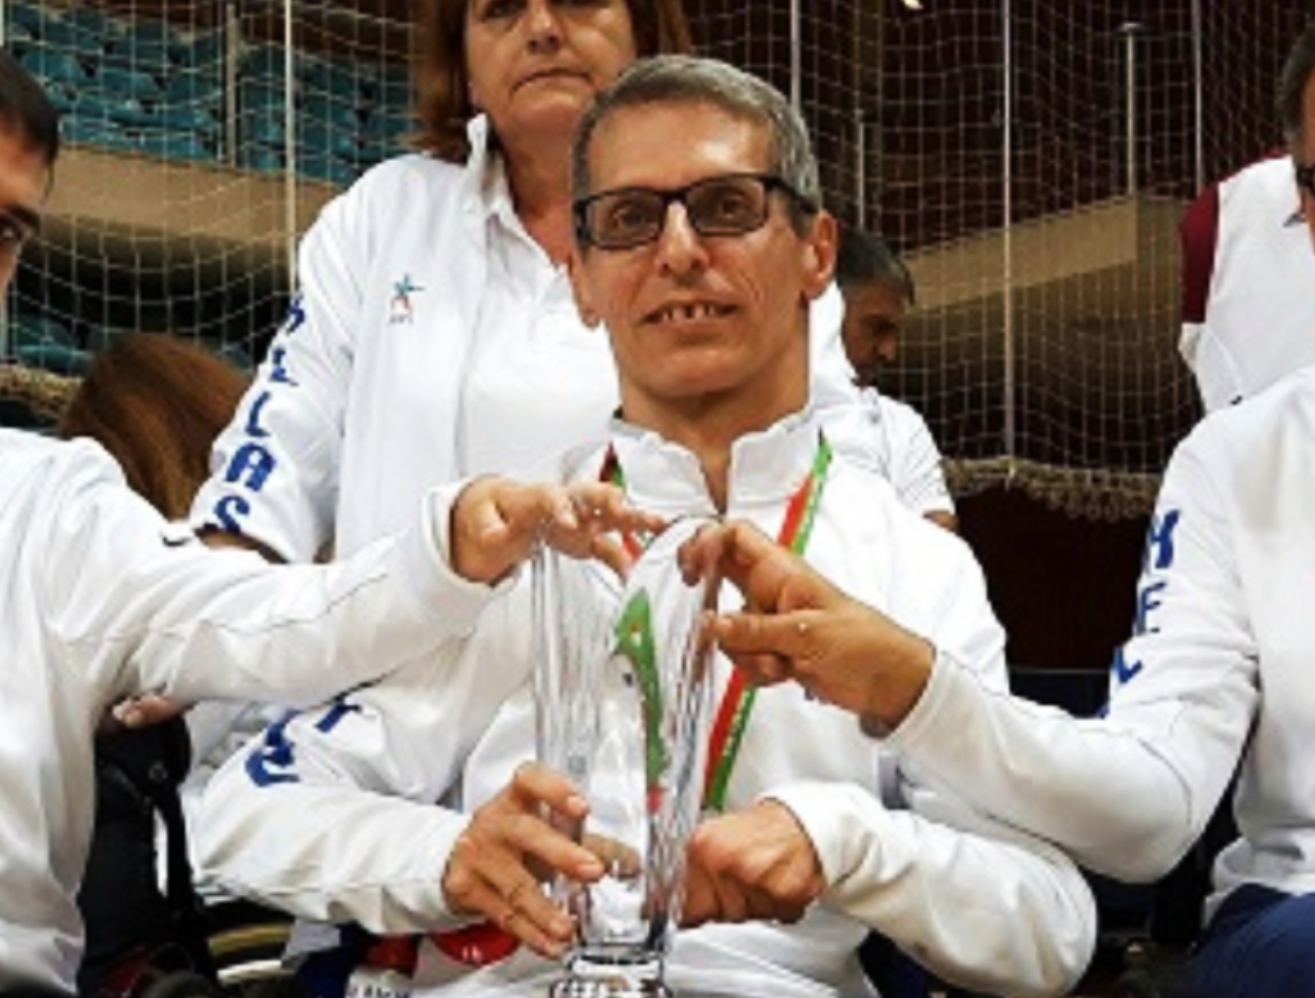 Μνημείο δύναμης ο 55χρονος αθλητής των Παραολυμπιακών και φοιτητής που διαπρέπει στο ΑΠΘ